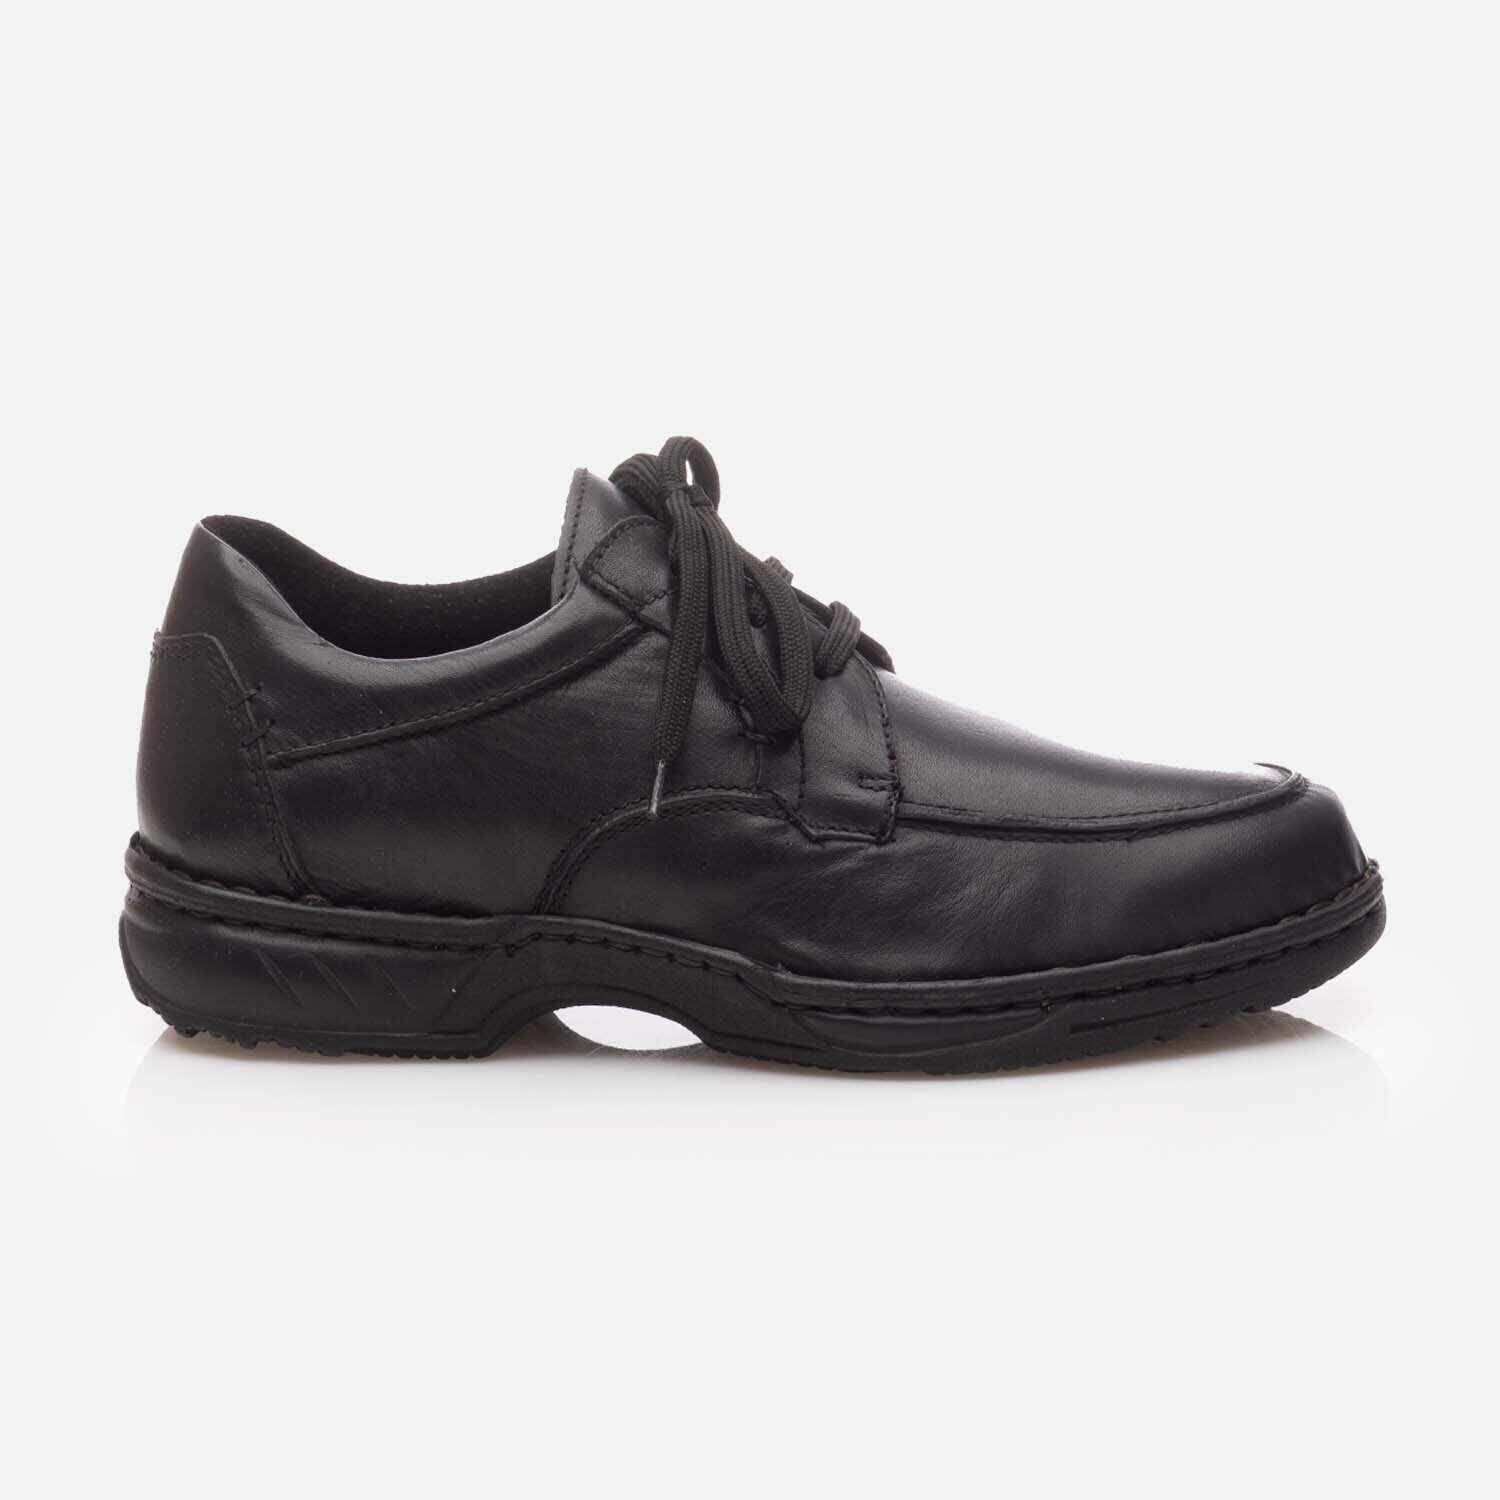 Pantofi casual bărbați din piele naturală - 9325 Negru Box